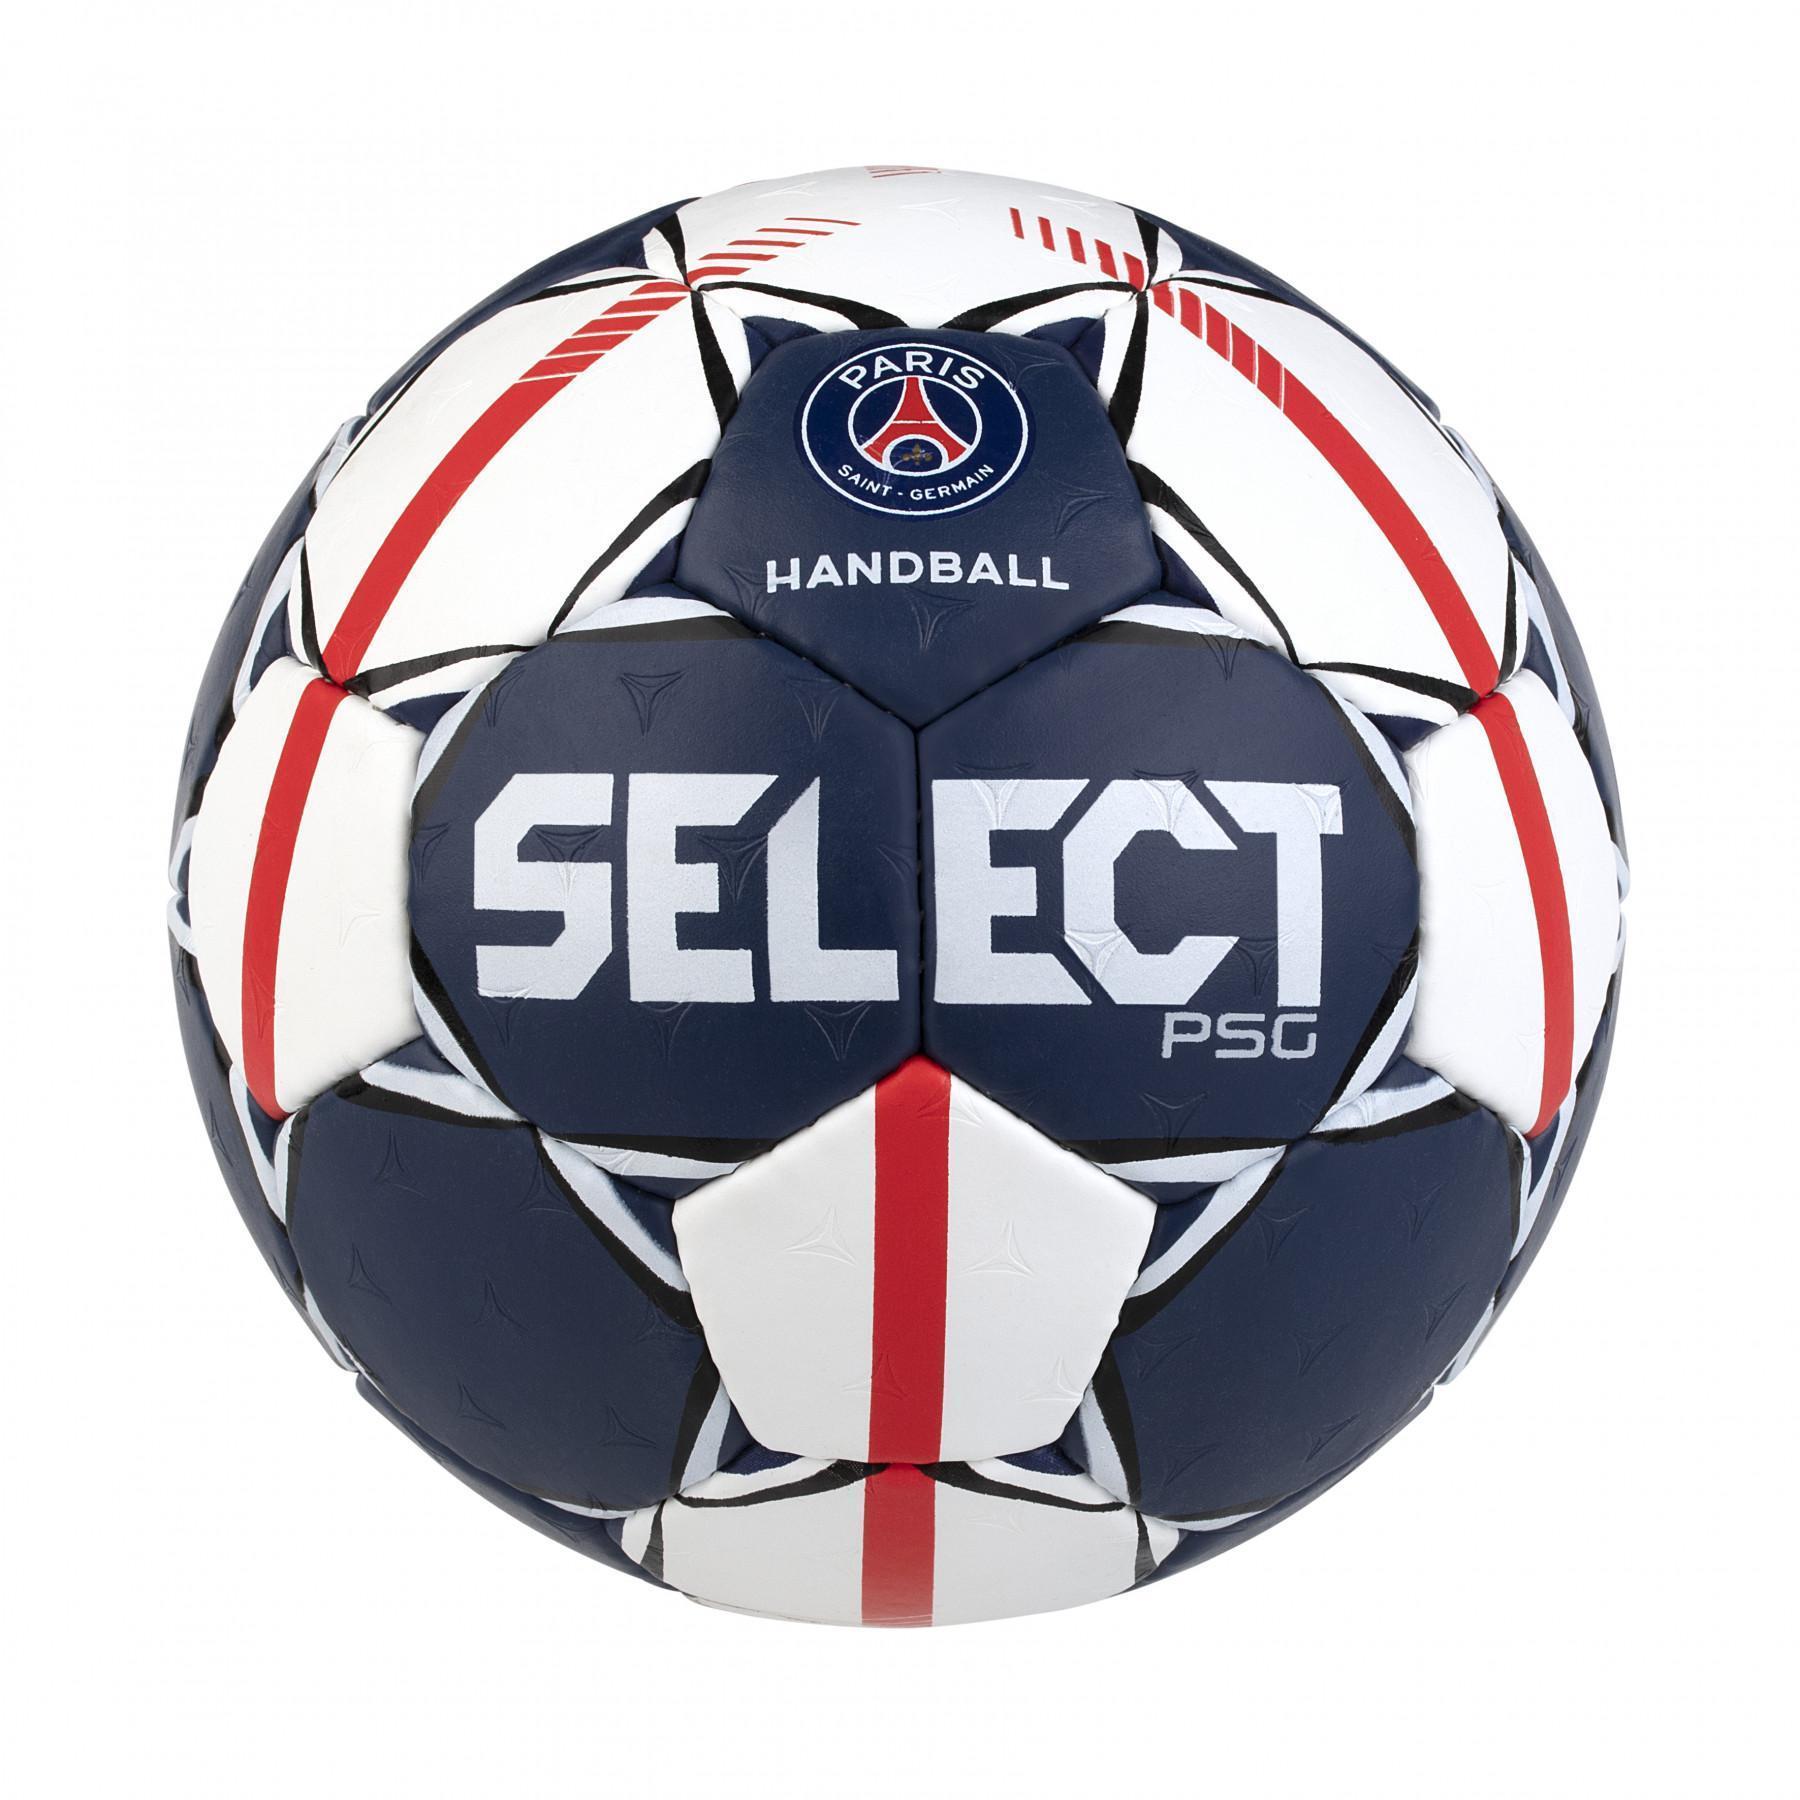 Handbal Select PSG 2020/21